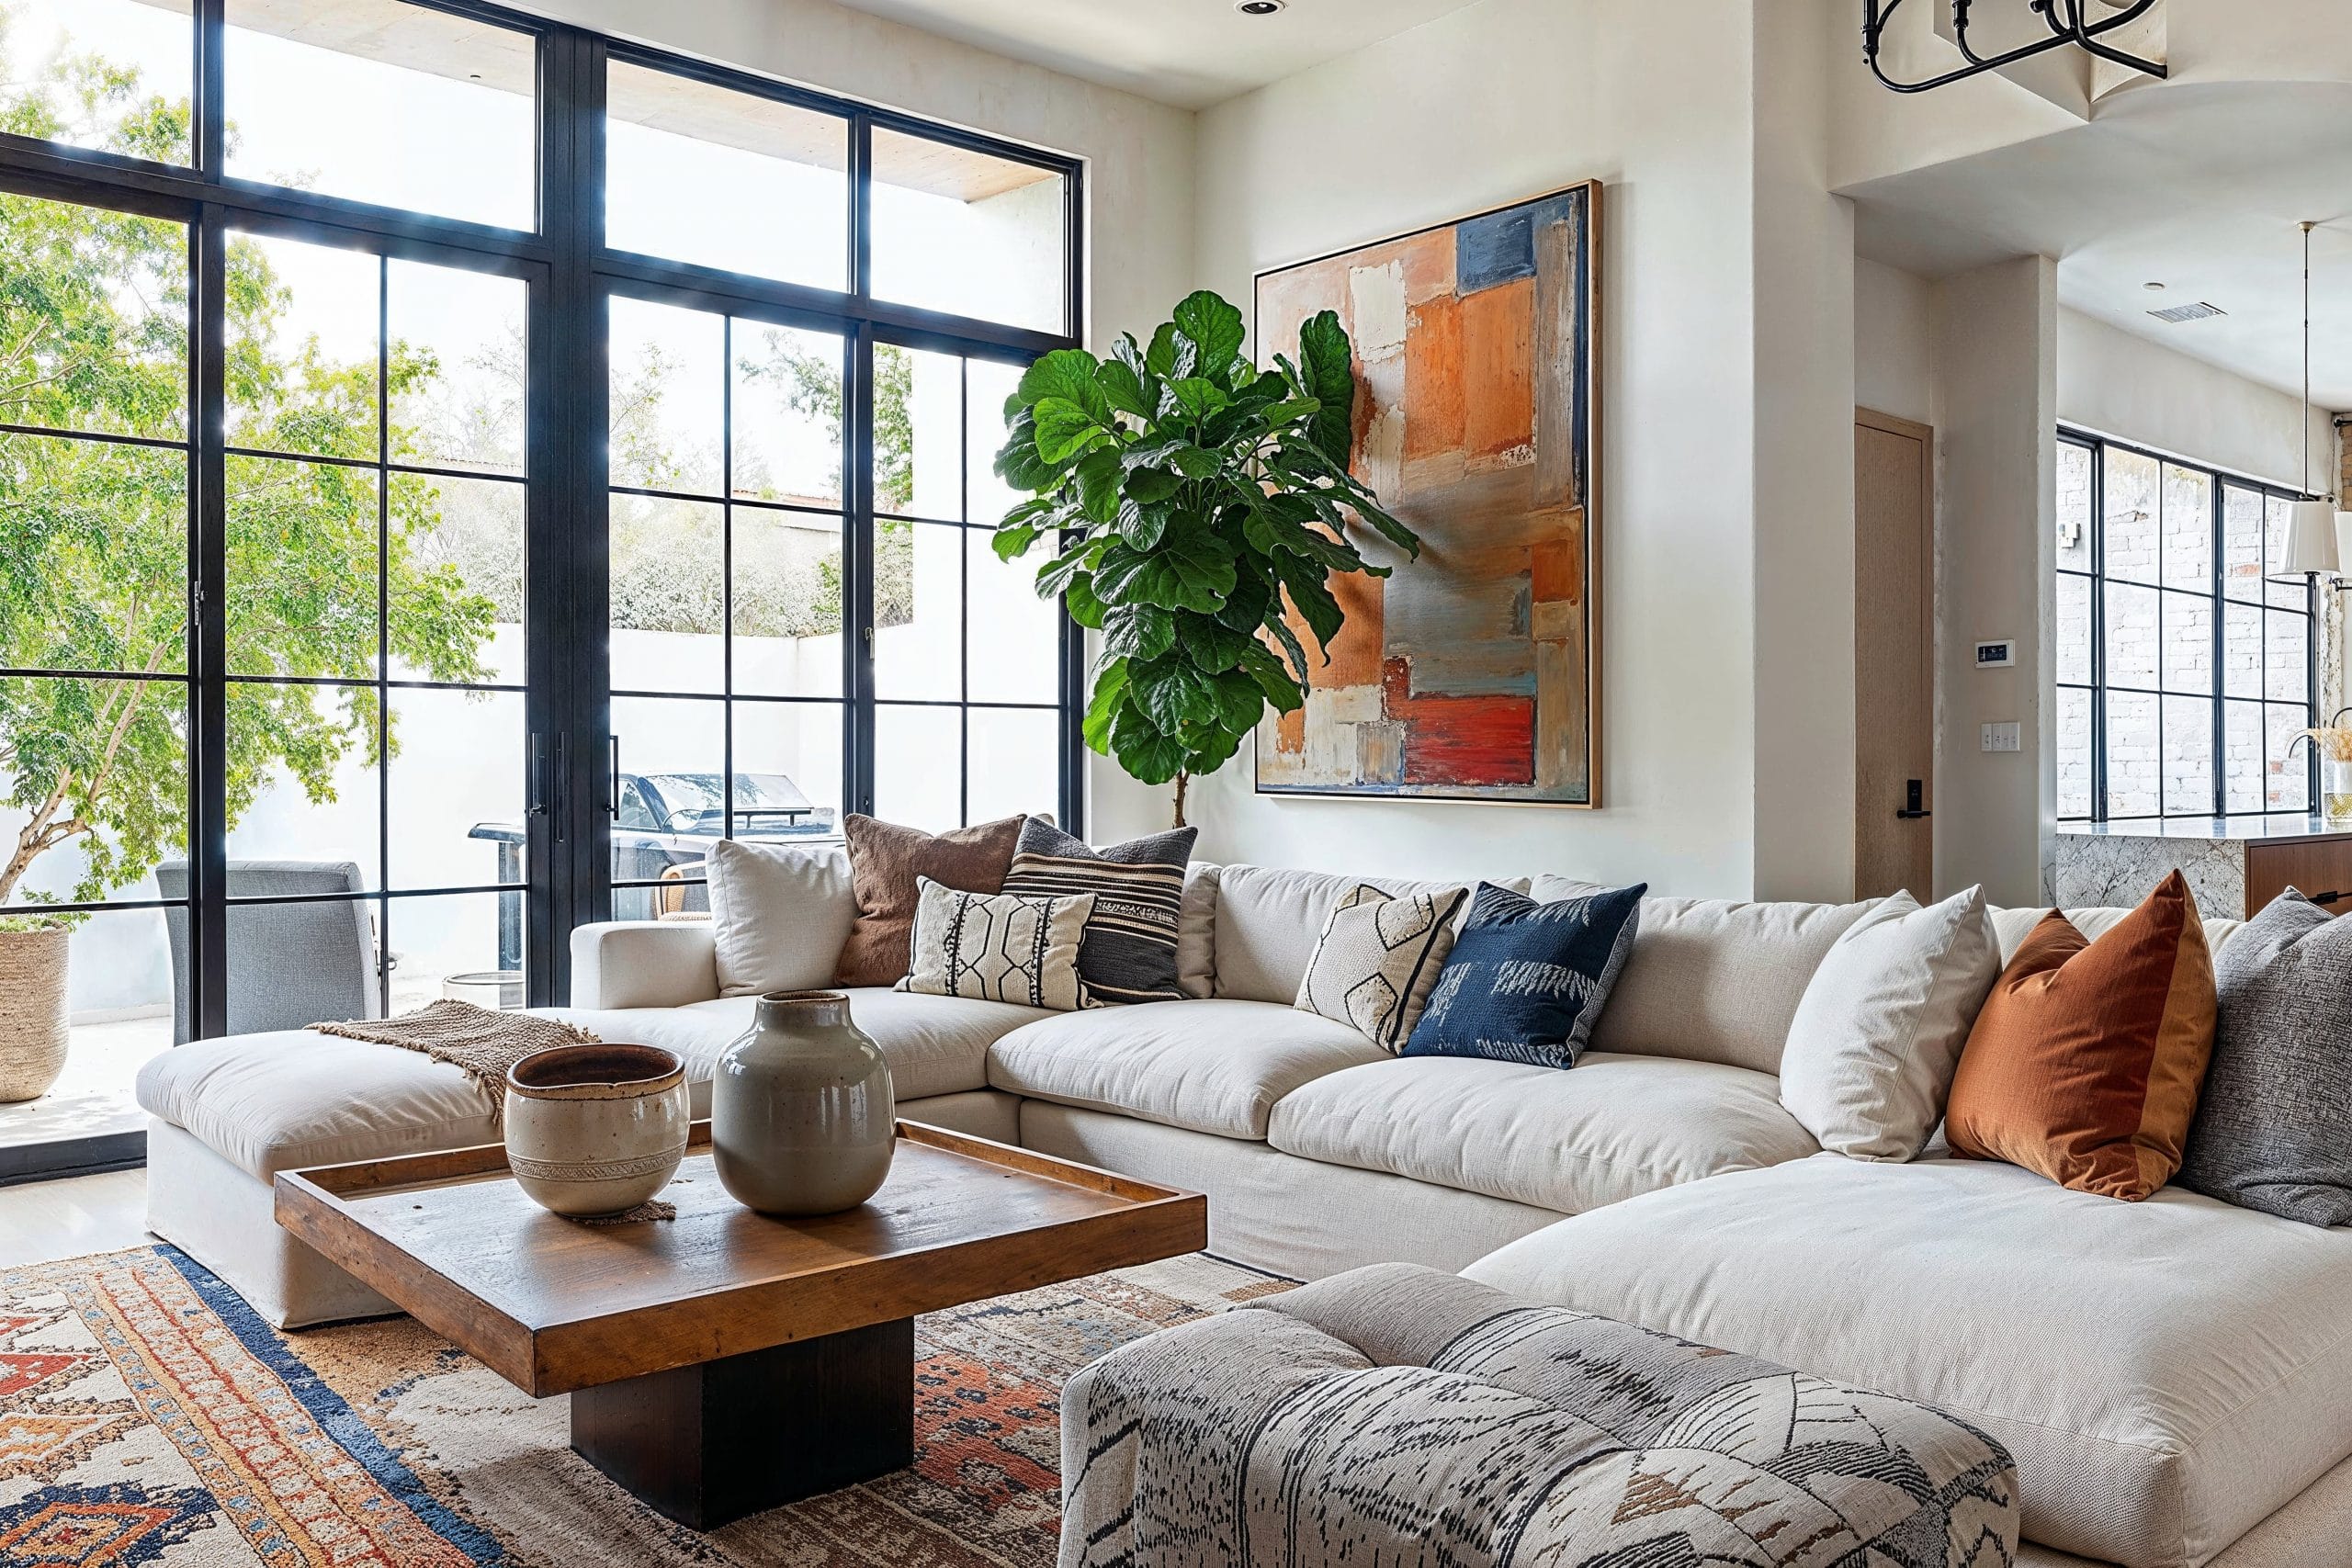 Interior Design Basics: How To Decorate A Home - Décor Aid